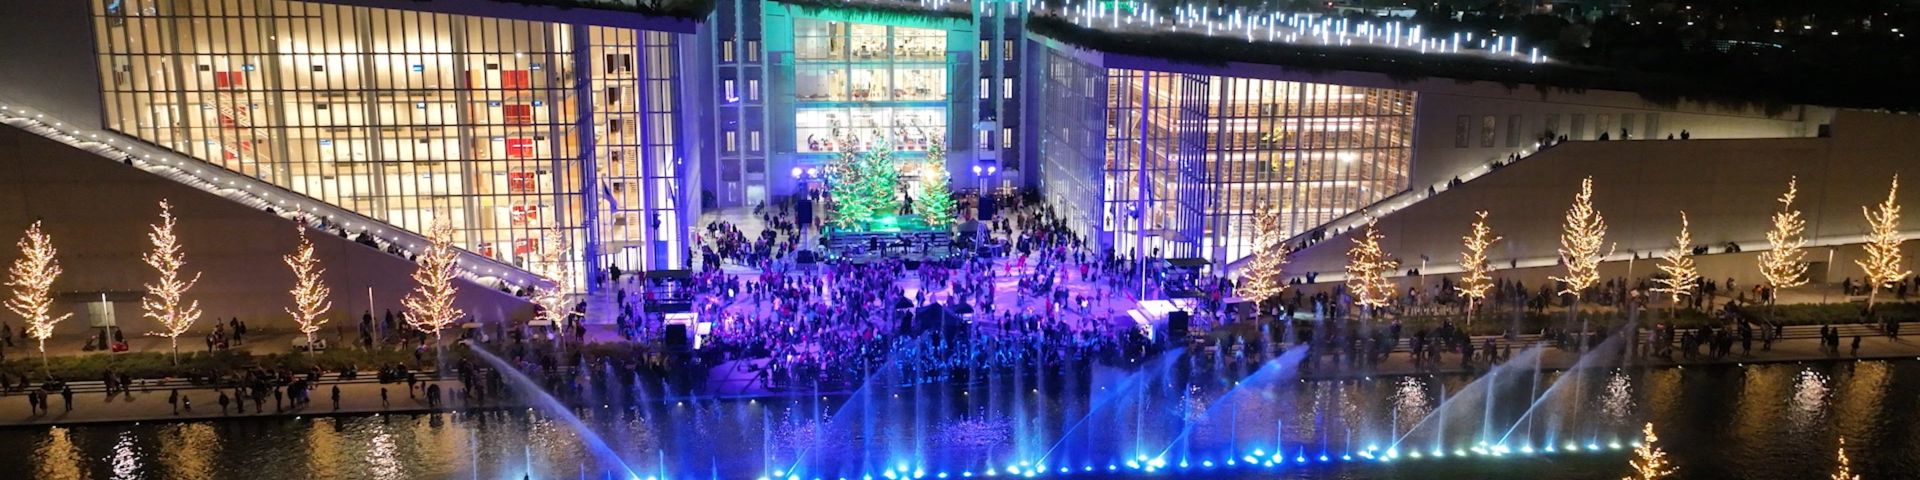 Εξωτερική νυχτερινή φωτογραφία του κτιρίου του ΚΠΙΣΝ με χριστουγεννιάτικο στολισμό και των Χορογραφημένων σιντριβανιών